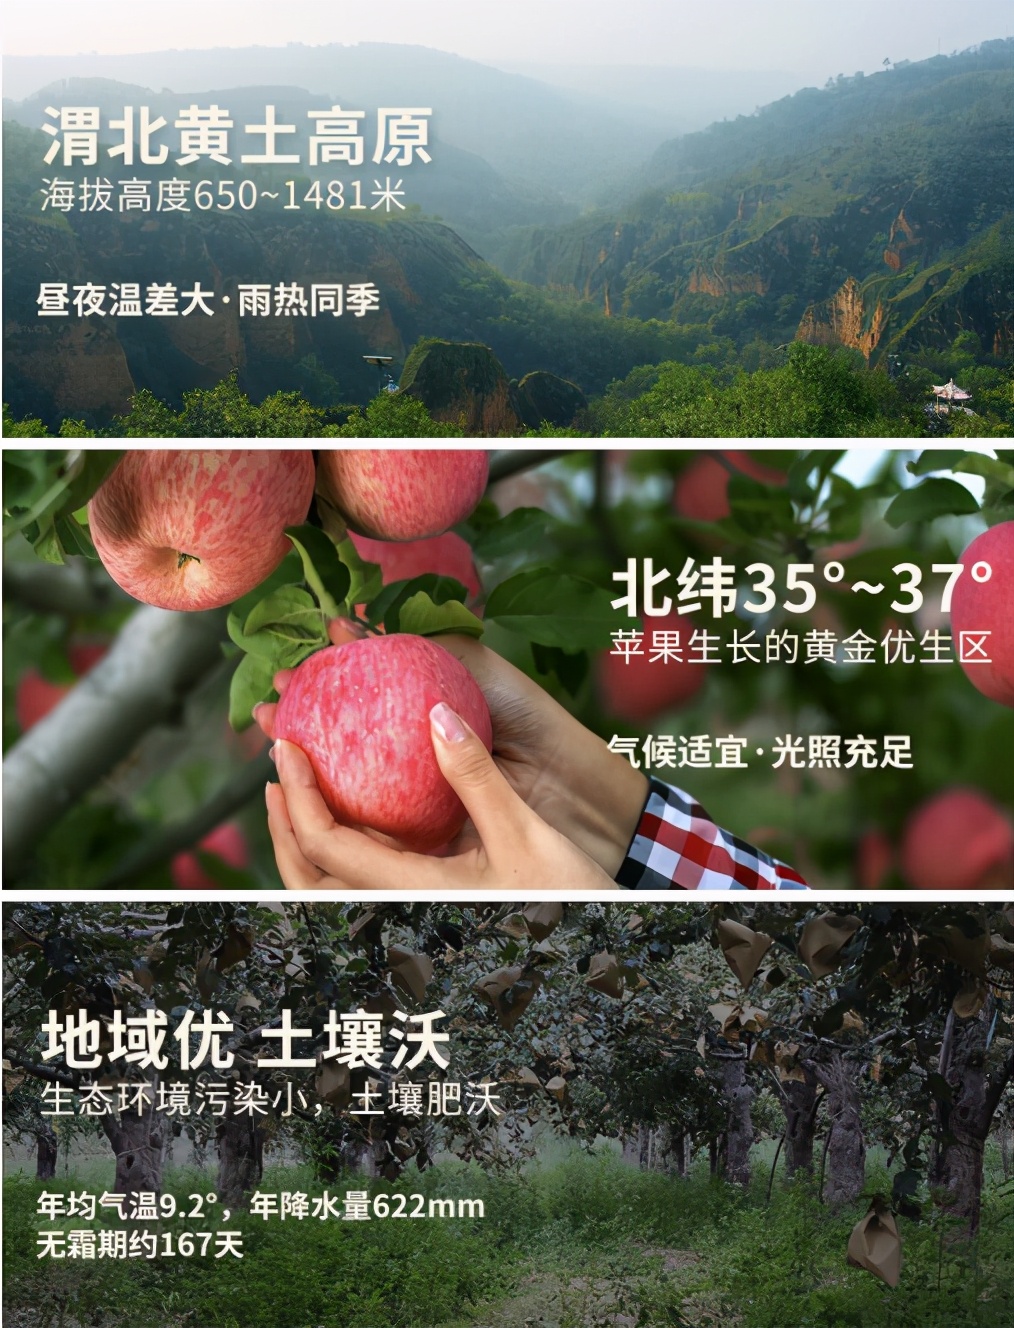 陕西省果业中心、洛川县政府联手拼多多打造洛川苹果专场直播